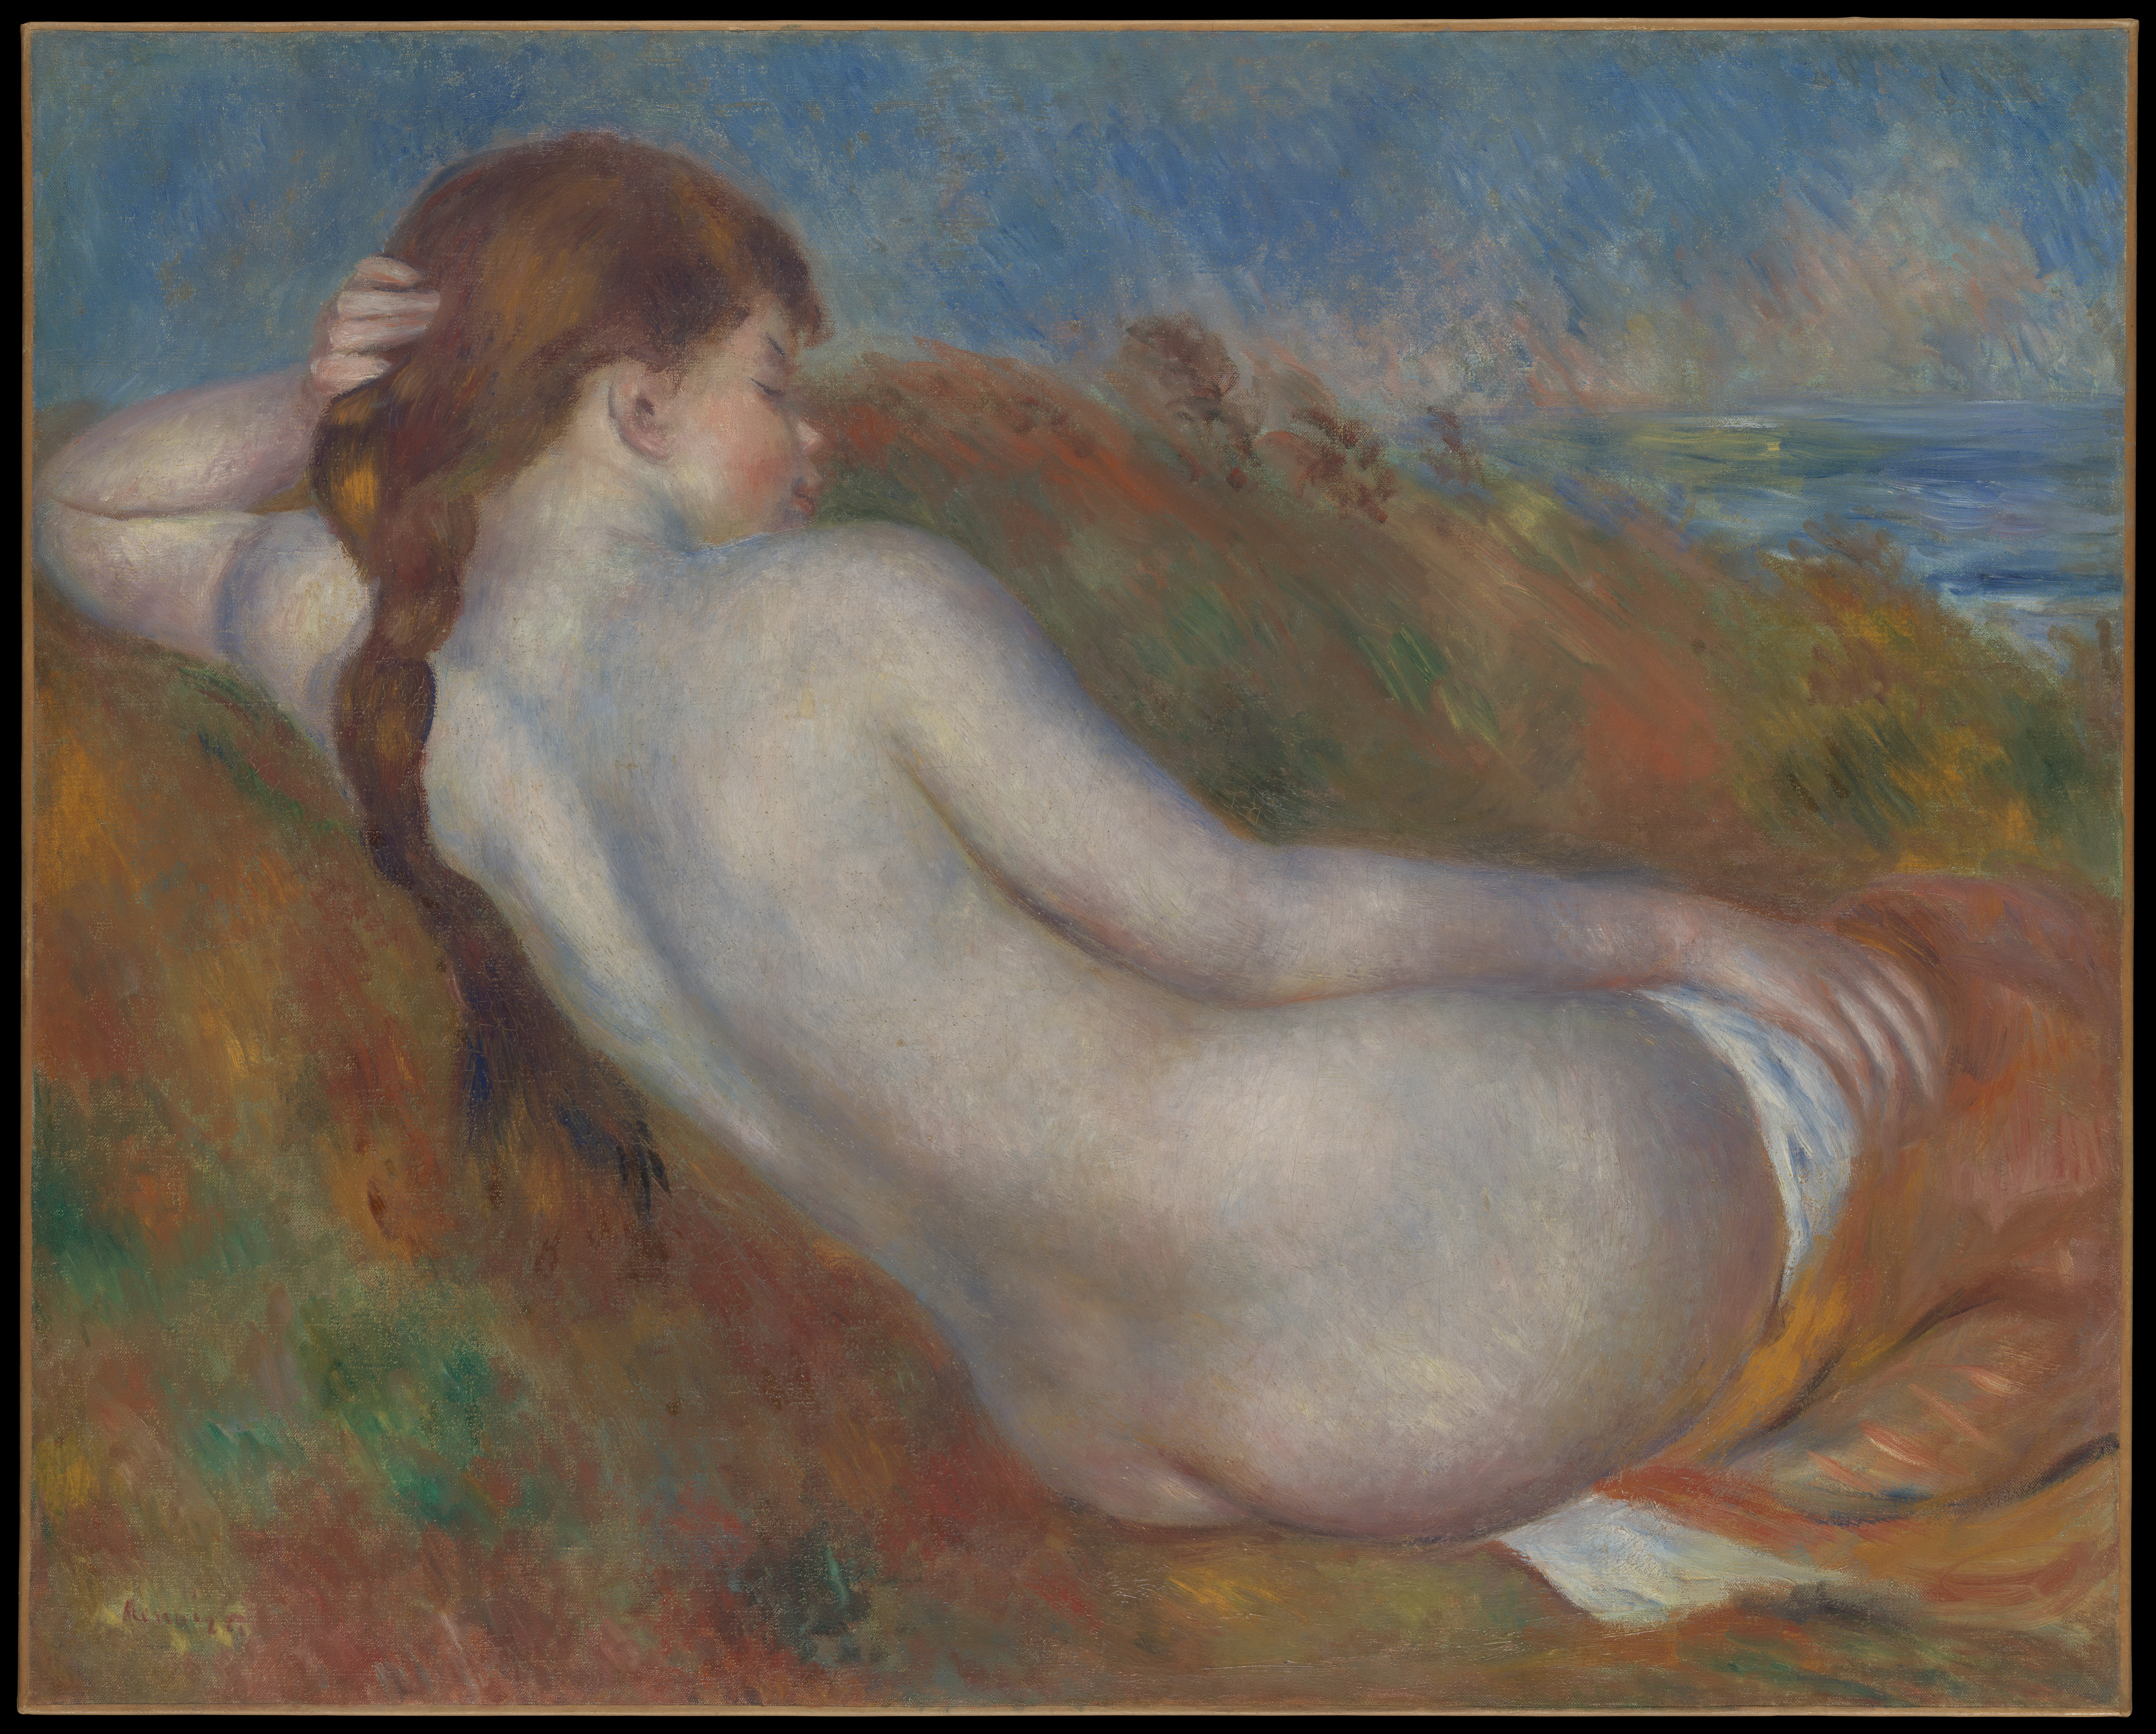 Desnudo reclinado by Pierre-Auguste Renoir - 1883 - 65,1 x 81,3 cm Museo Metropolitano de Arte